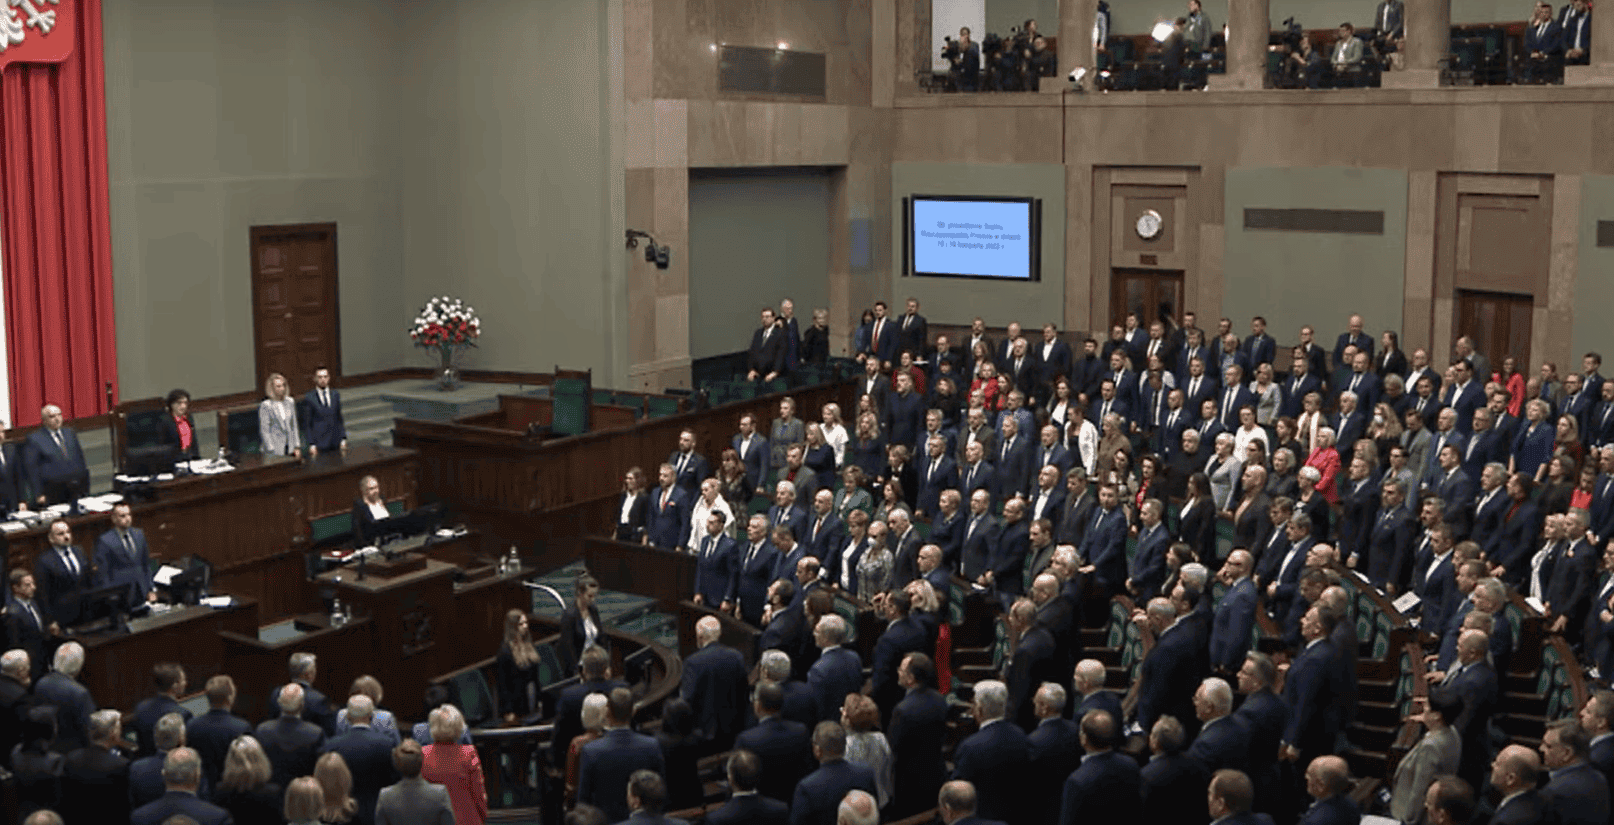 Wszyscy zgromadzeni posłowie w Sejmie odśpiewali "Mazurka Dąbrowskiego" tuż po wystąpieniu Mateusza Morawieckiego